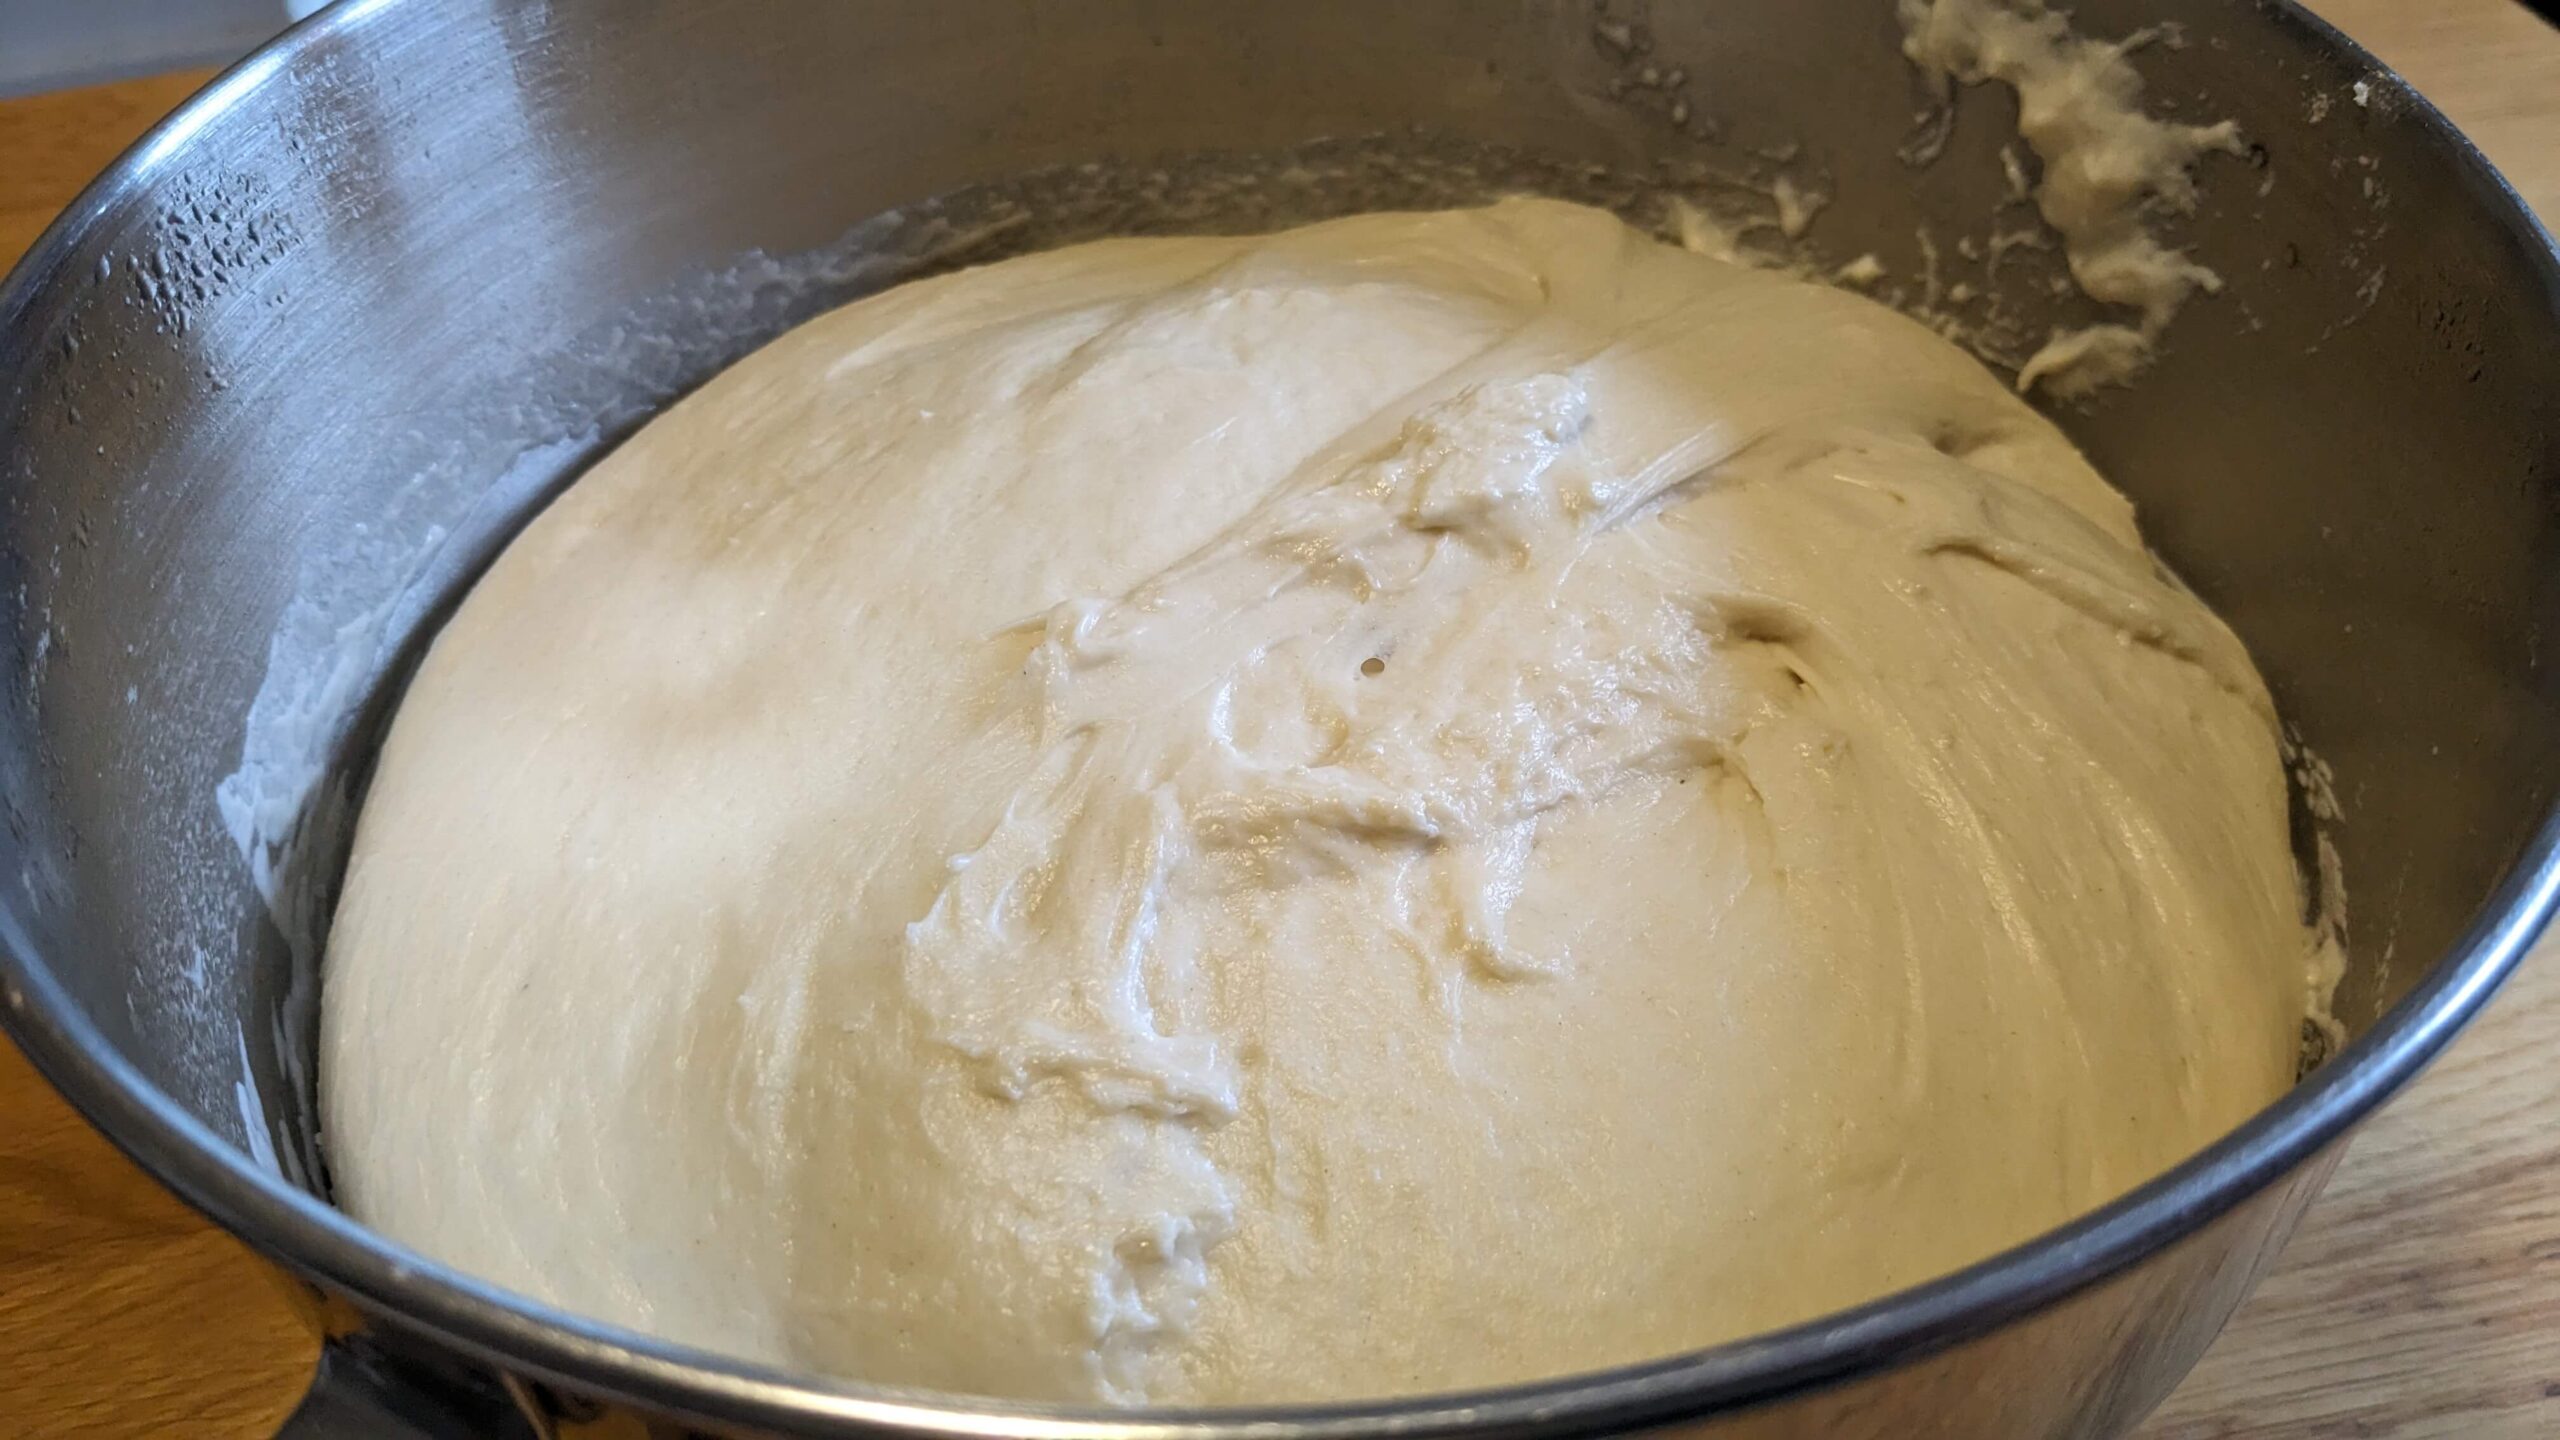 bread dough in a silver bowl